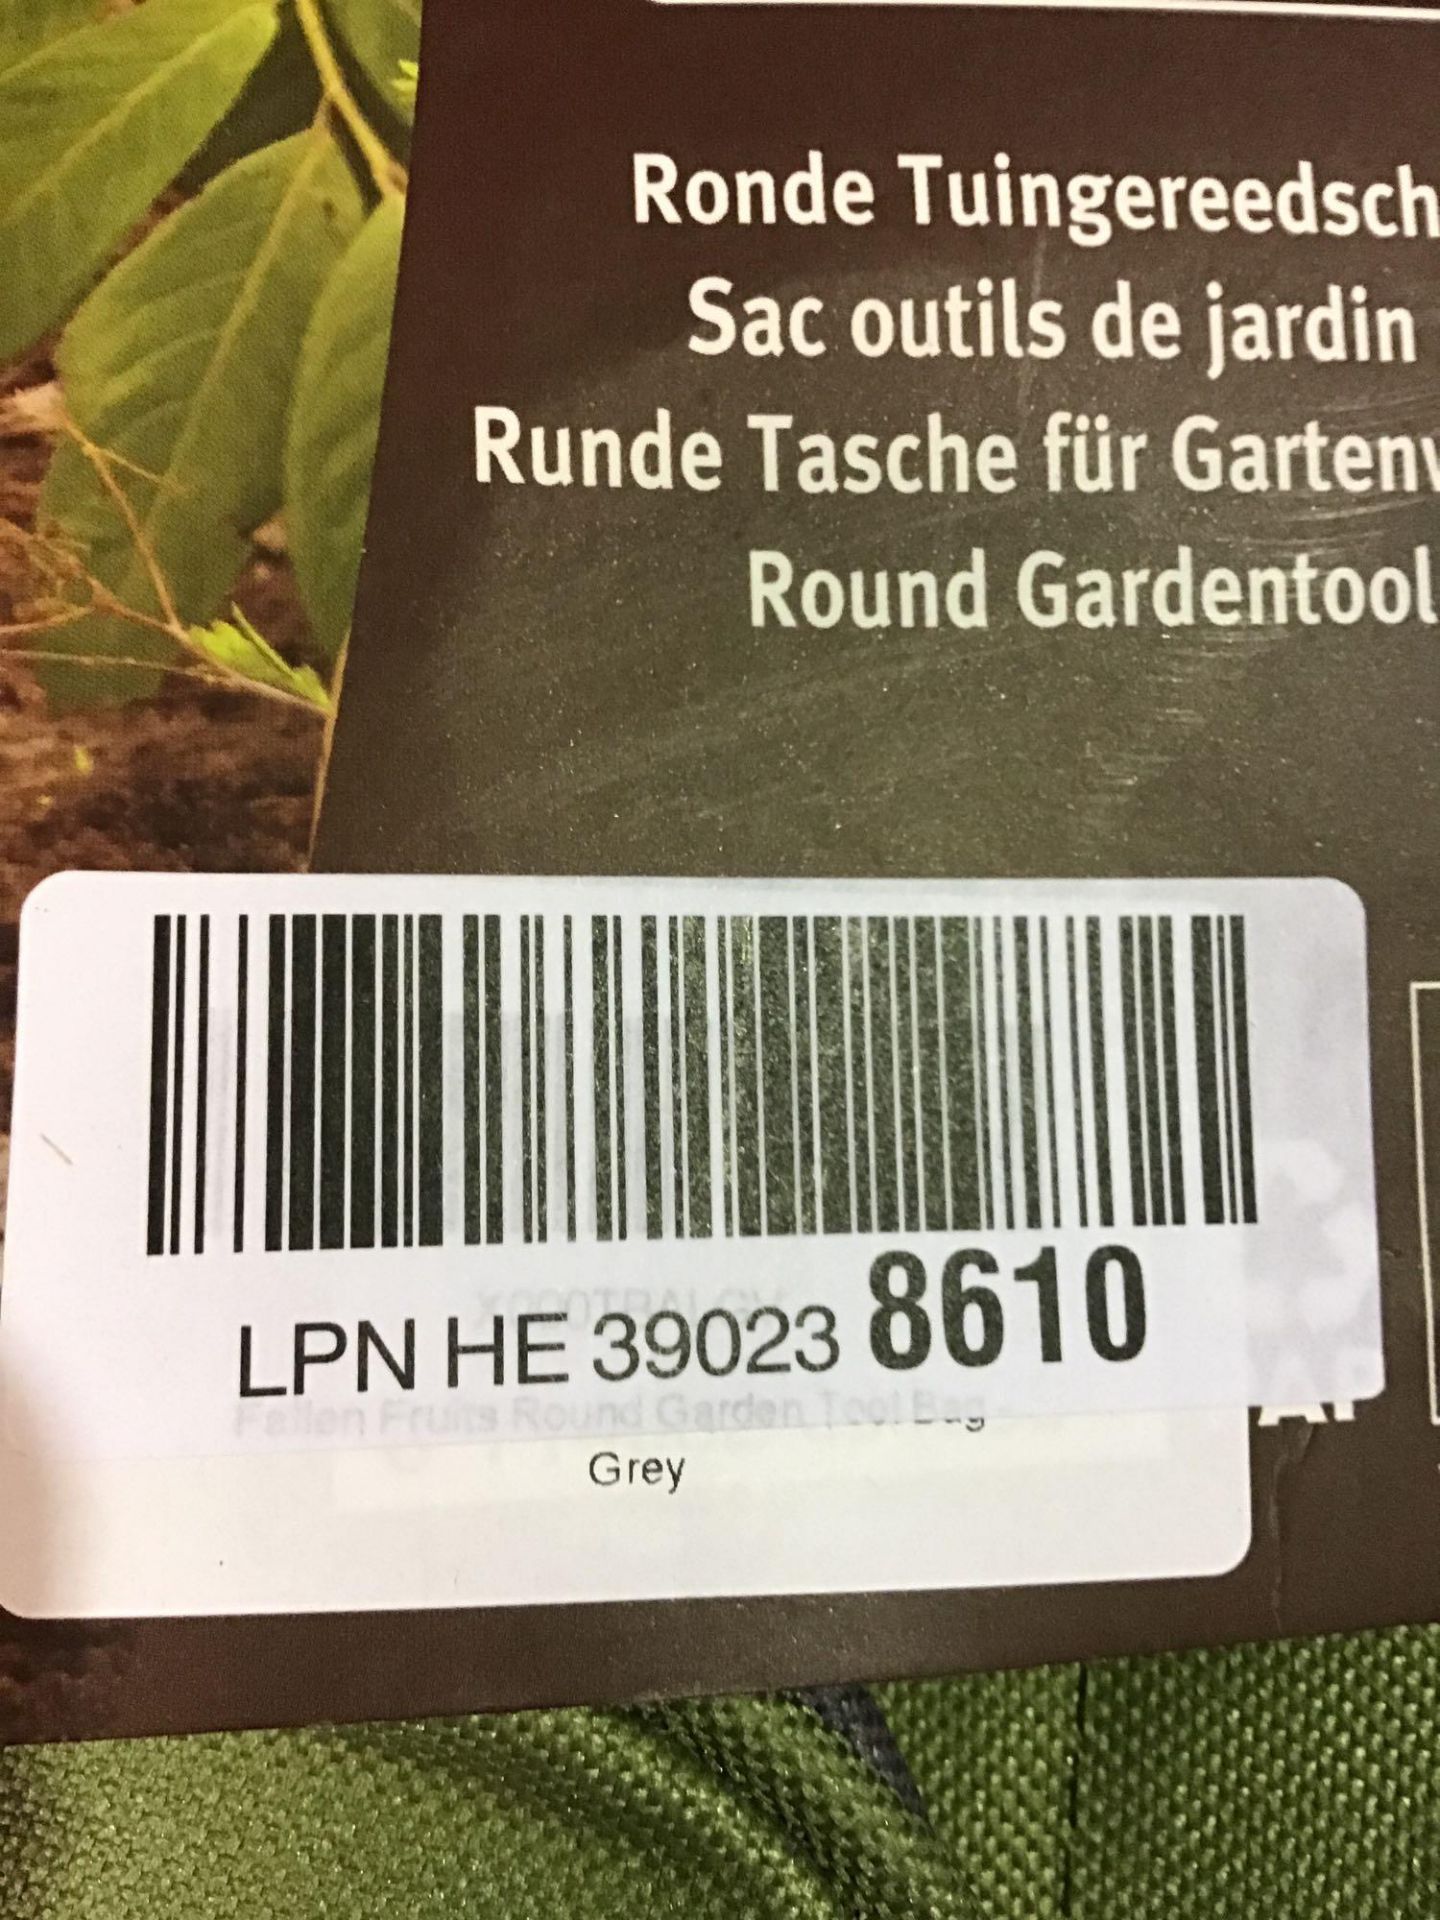 Fallen Fruits GT89 Round Garden Tool Bag - Grey £9.45 RRP - Image 4 of 5